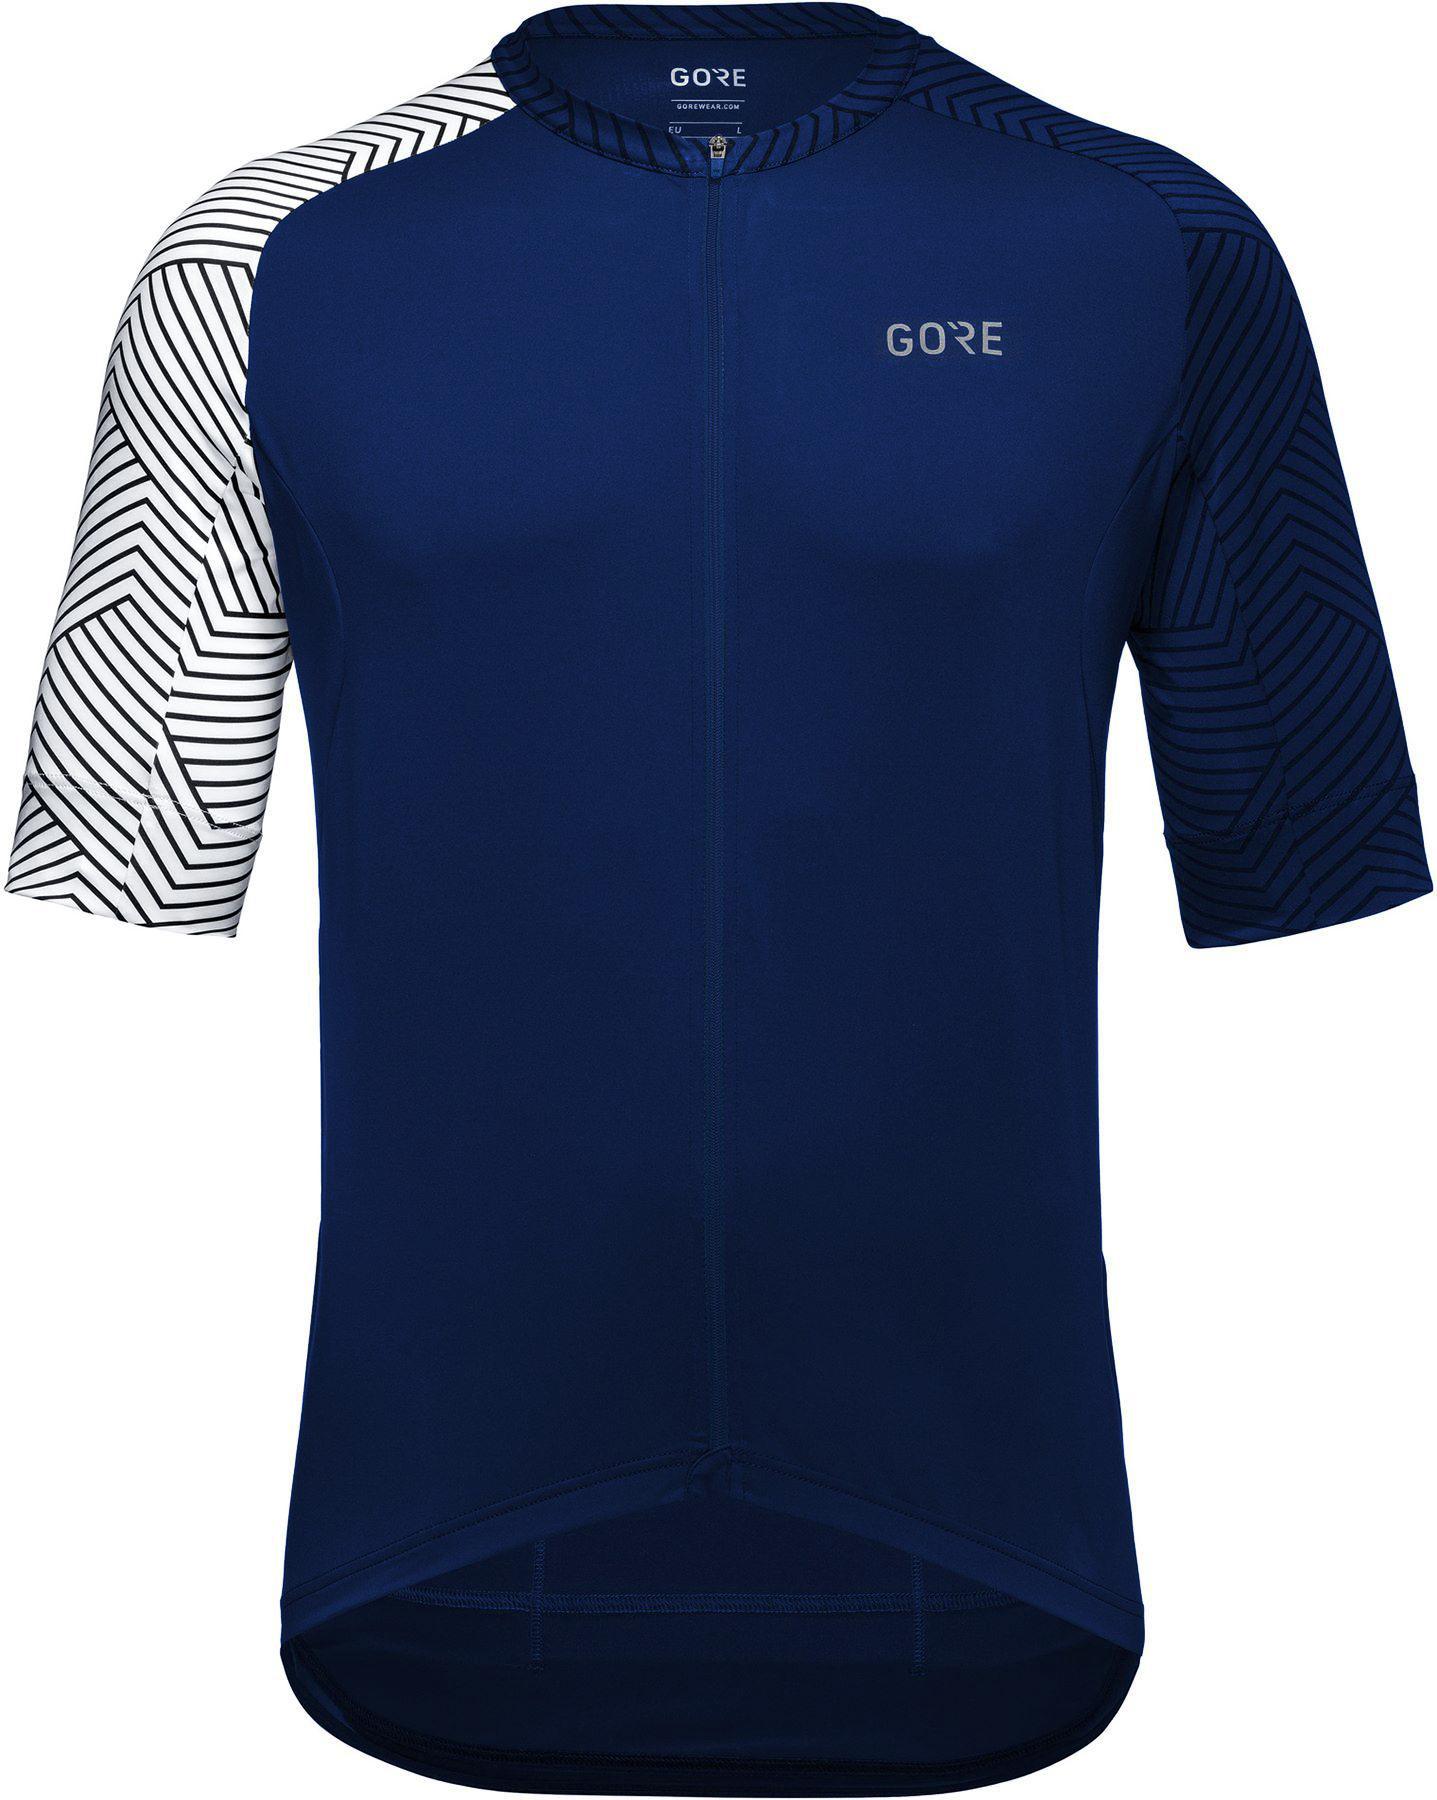 Gorewear C5 Jersey - Orbit Blue/white